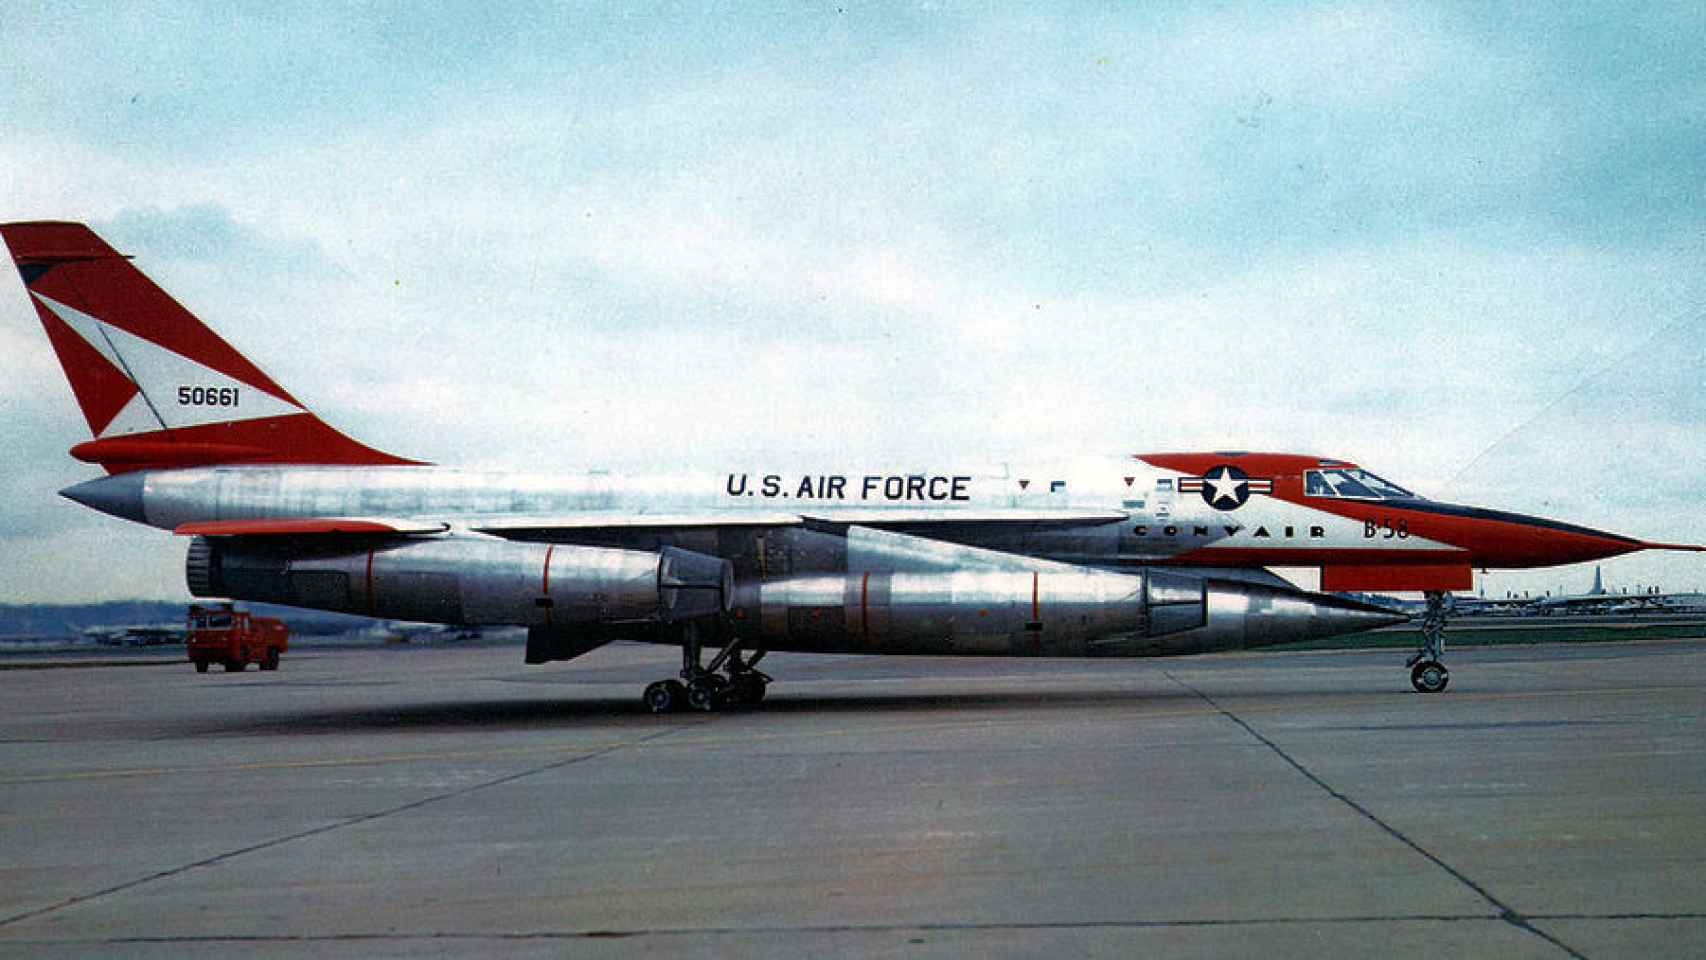 Convair B-58A